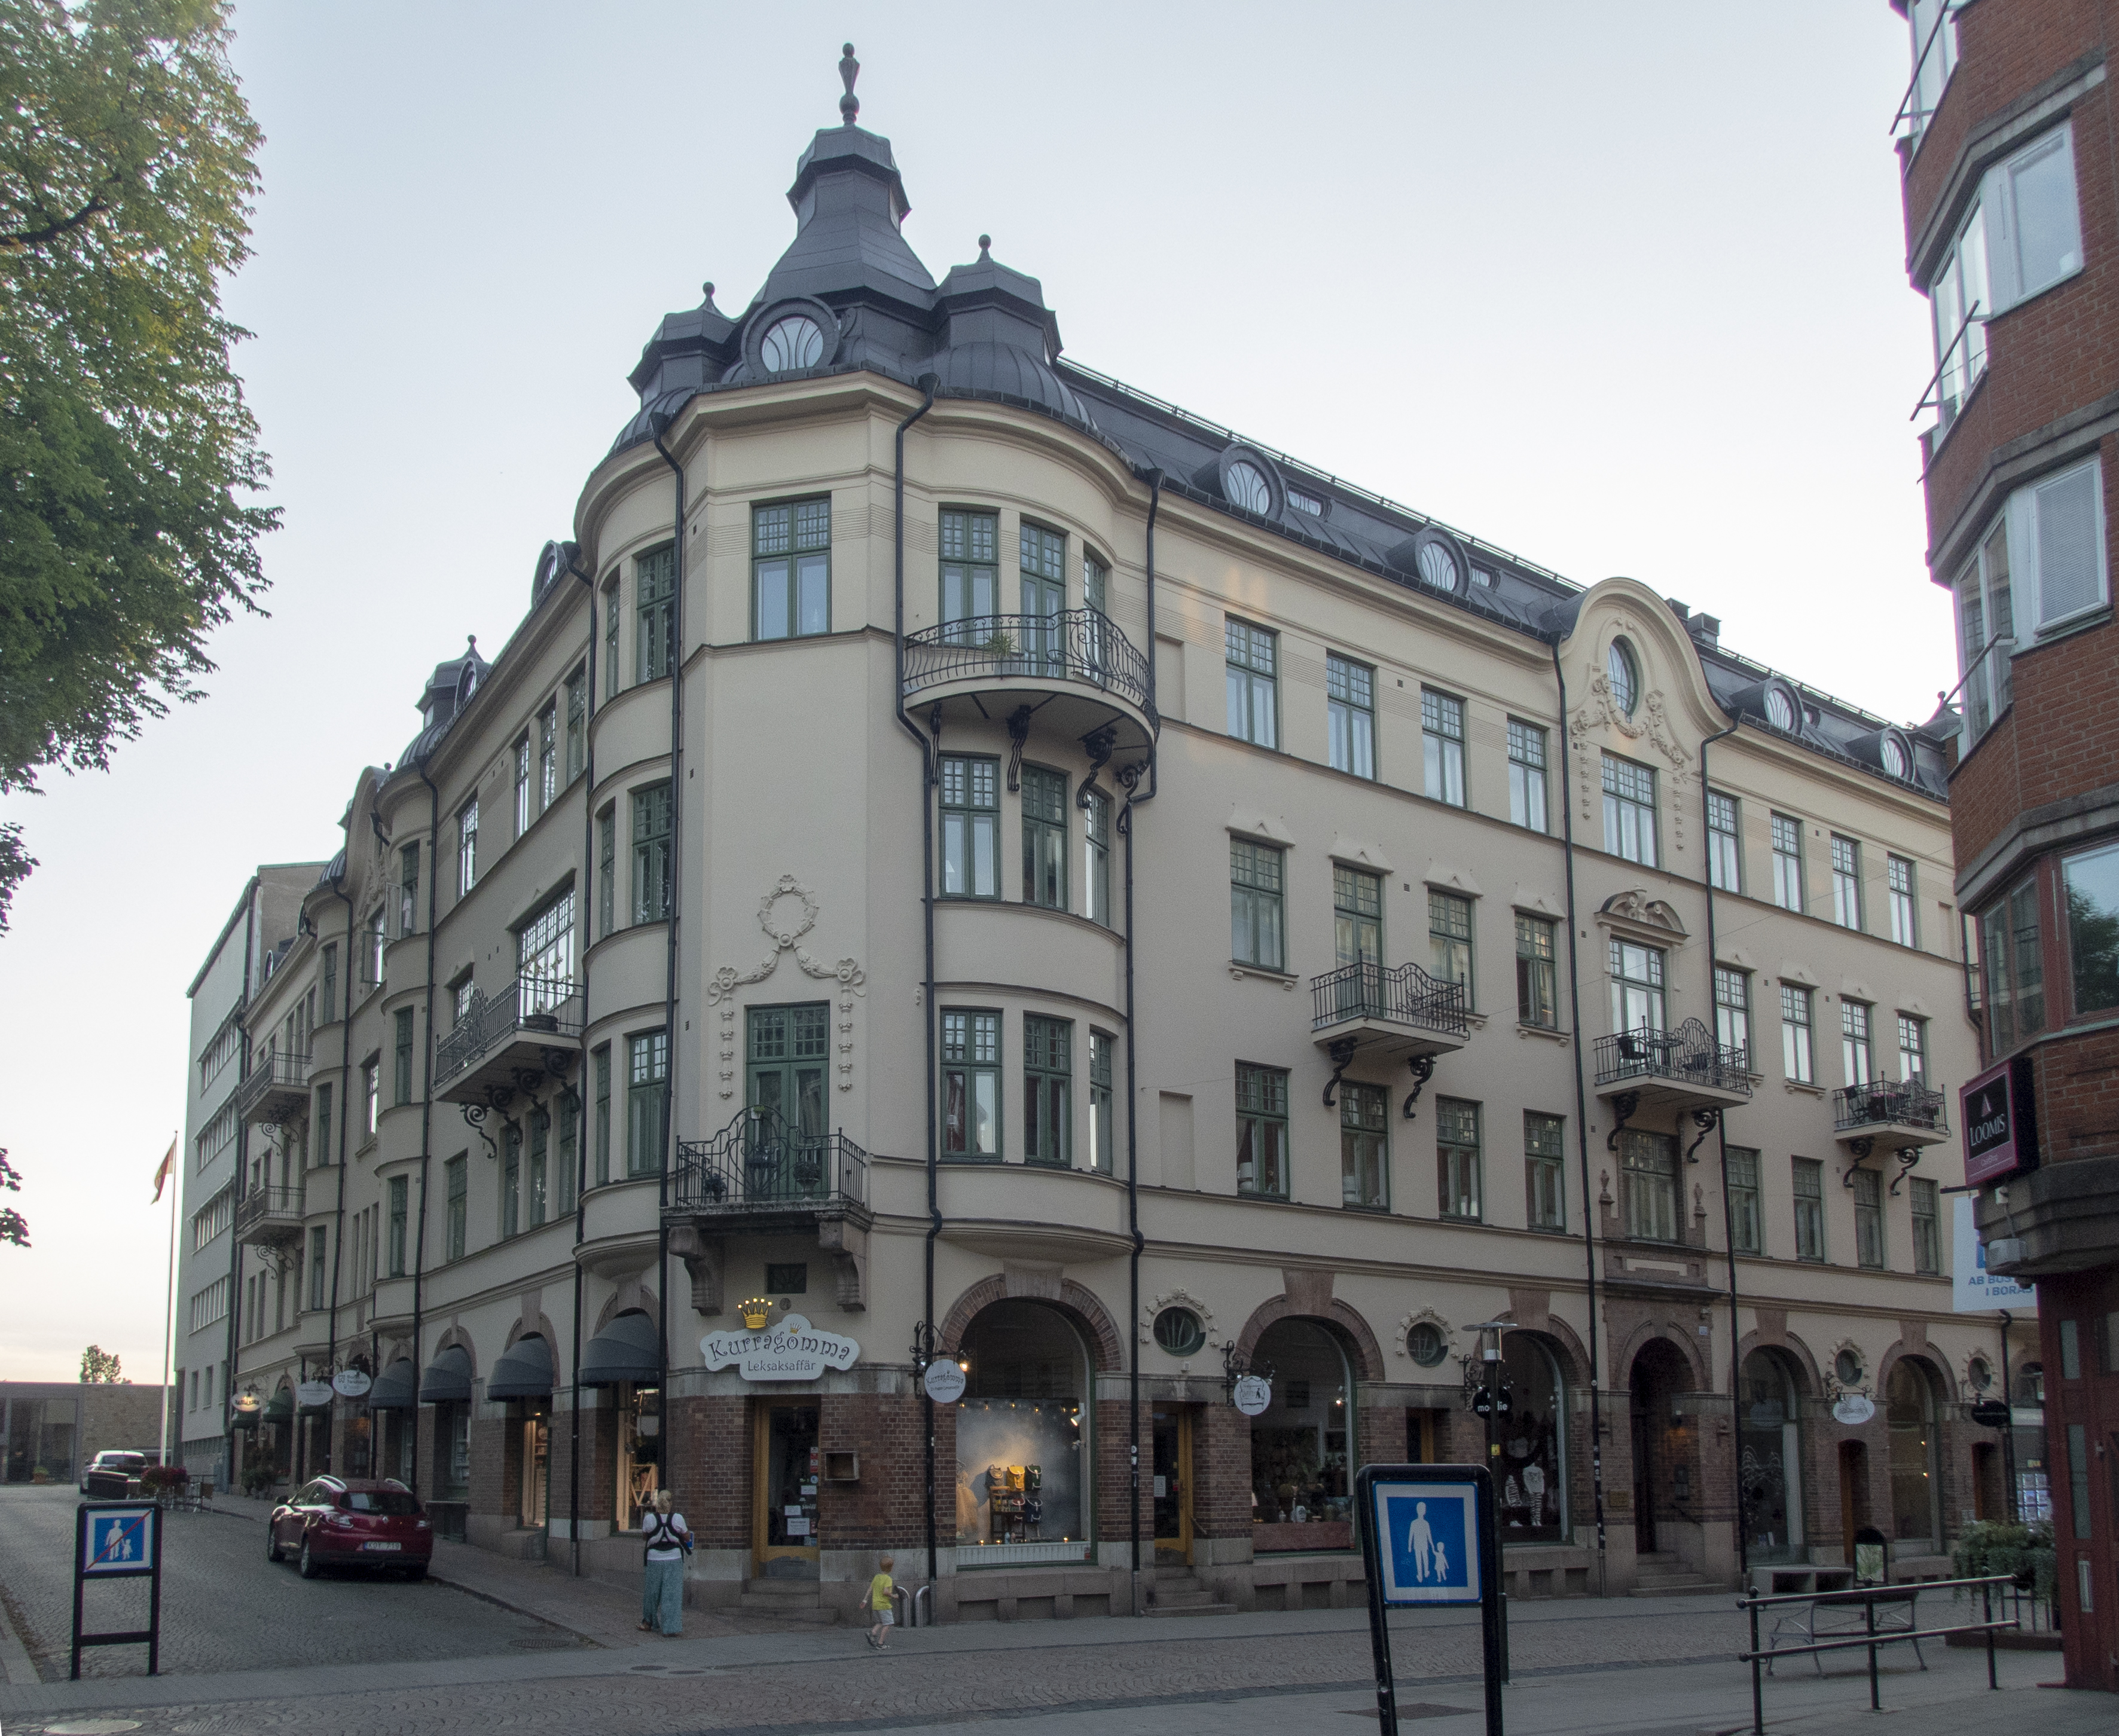 Von Ahnska huset i Borås är Sveriges sextioförsta vackraste byggnad genom tiderna.